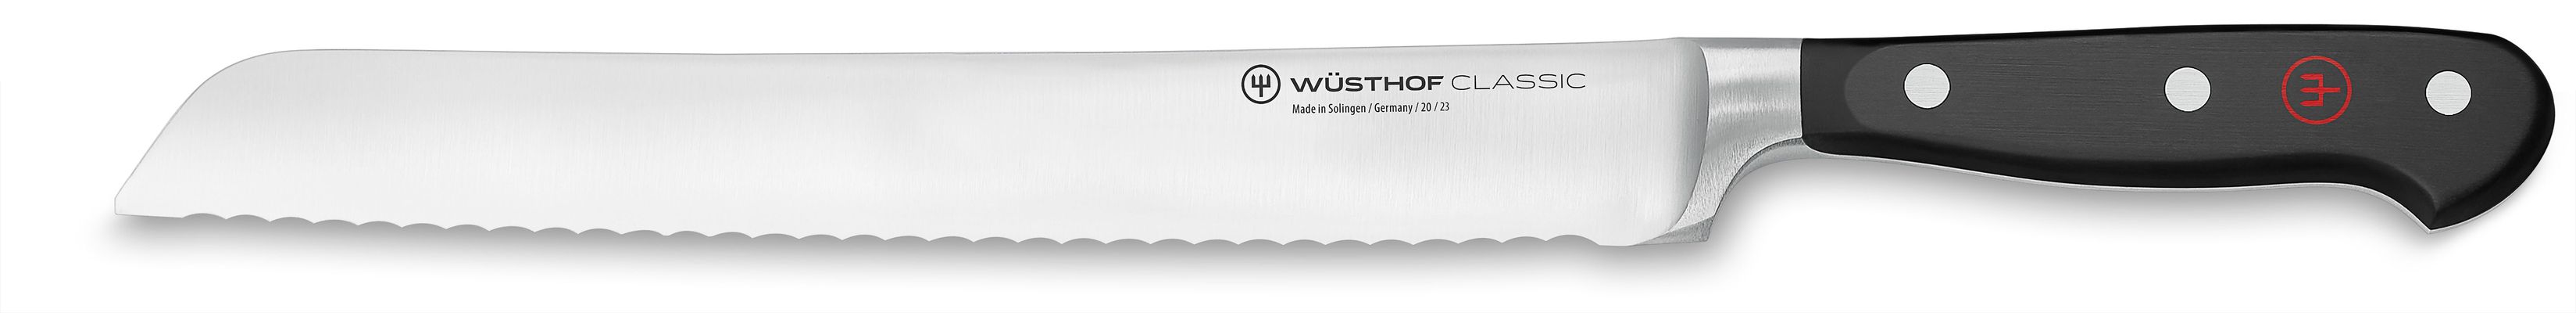 Wusthof Bread Knife